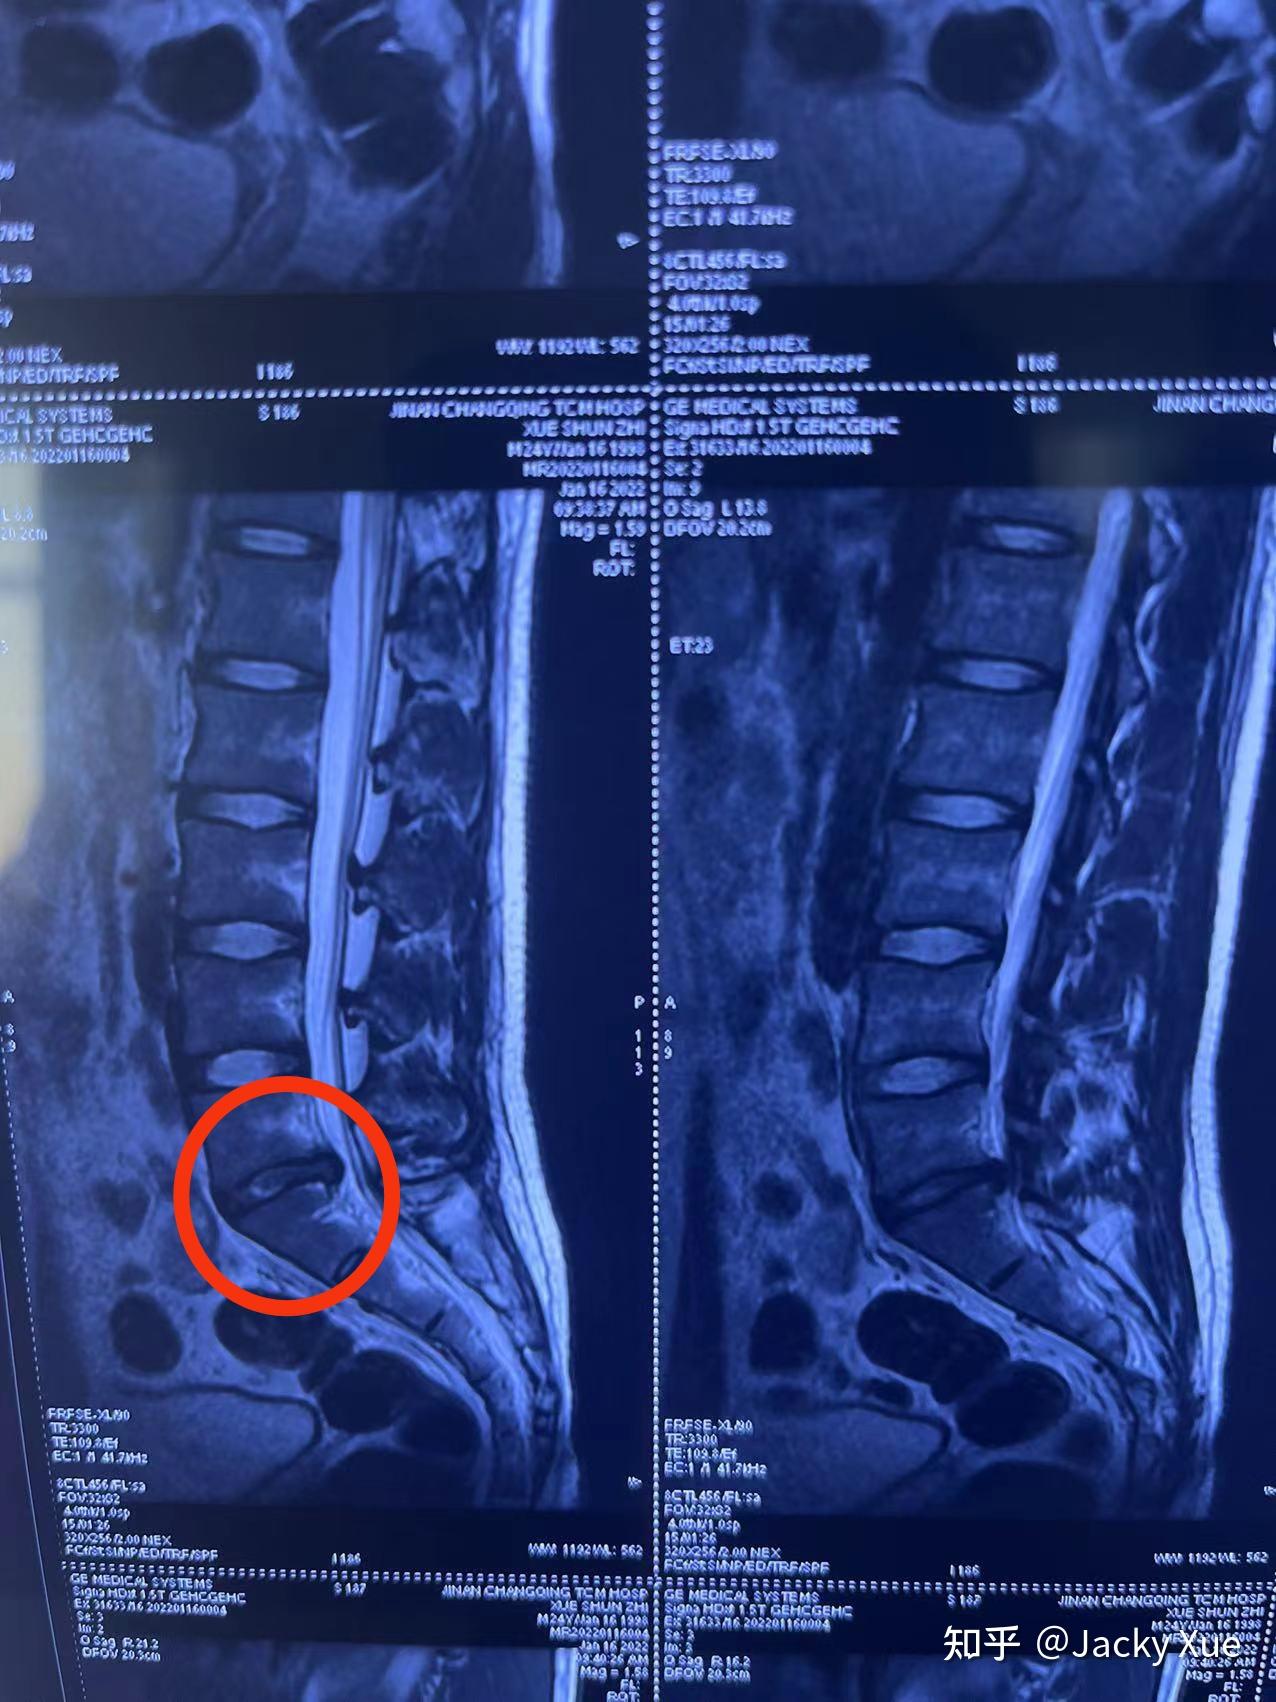 23岁l5s1腰椎间盘突出(脱出)引起脚麻的4个月记录